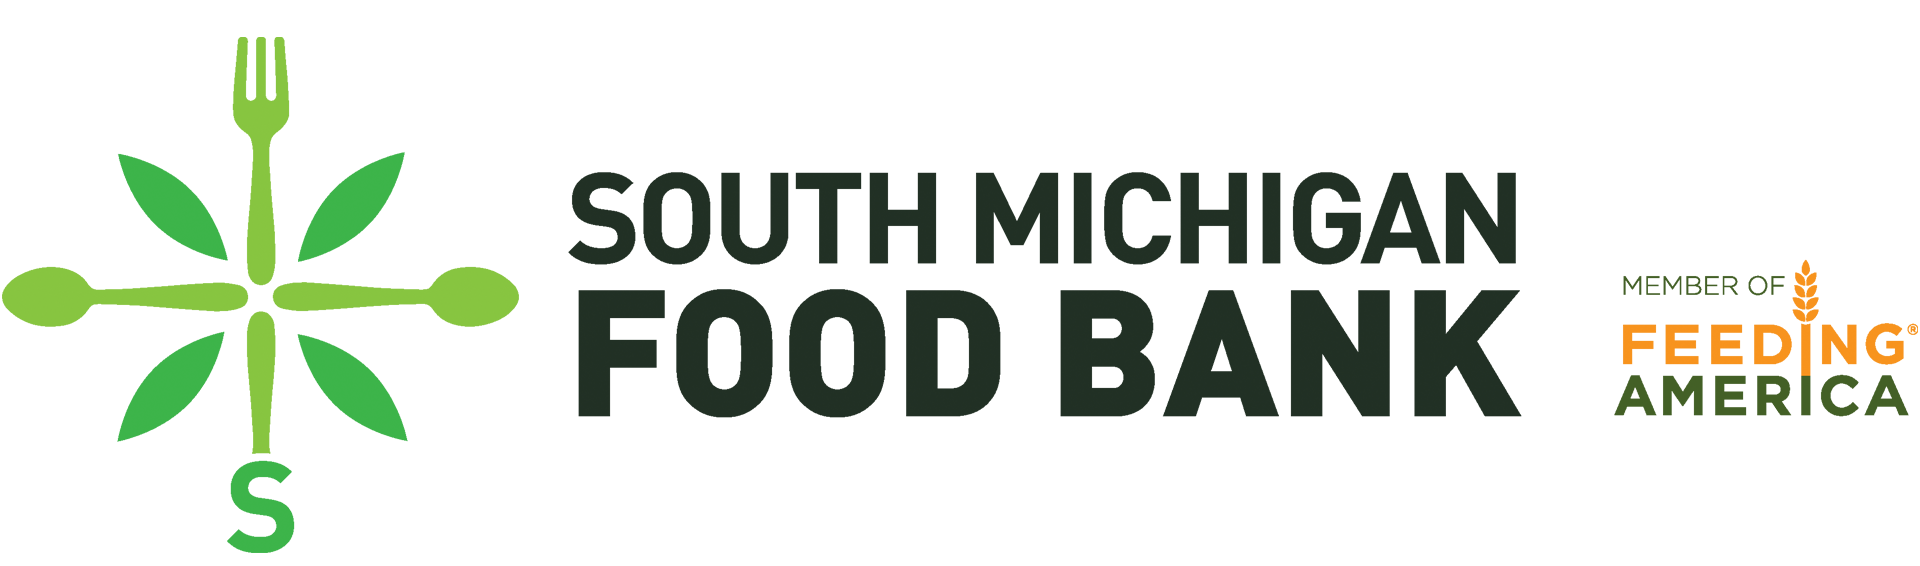 South Michigan Food Bank